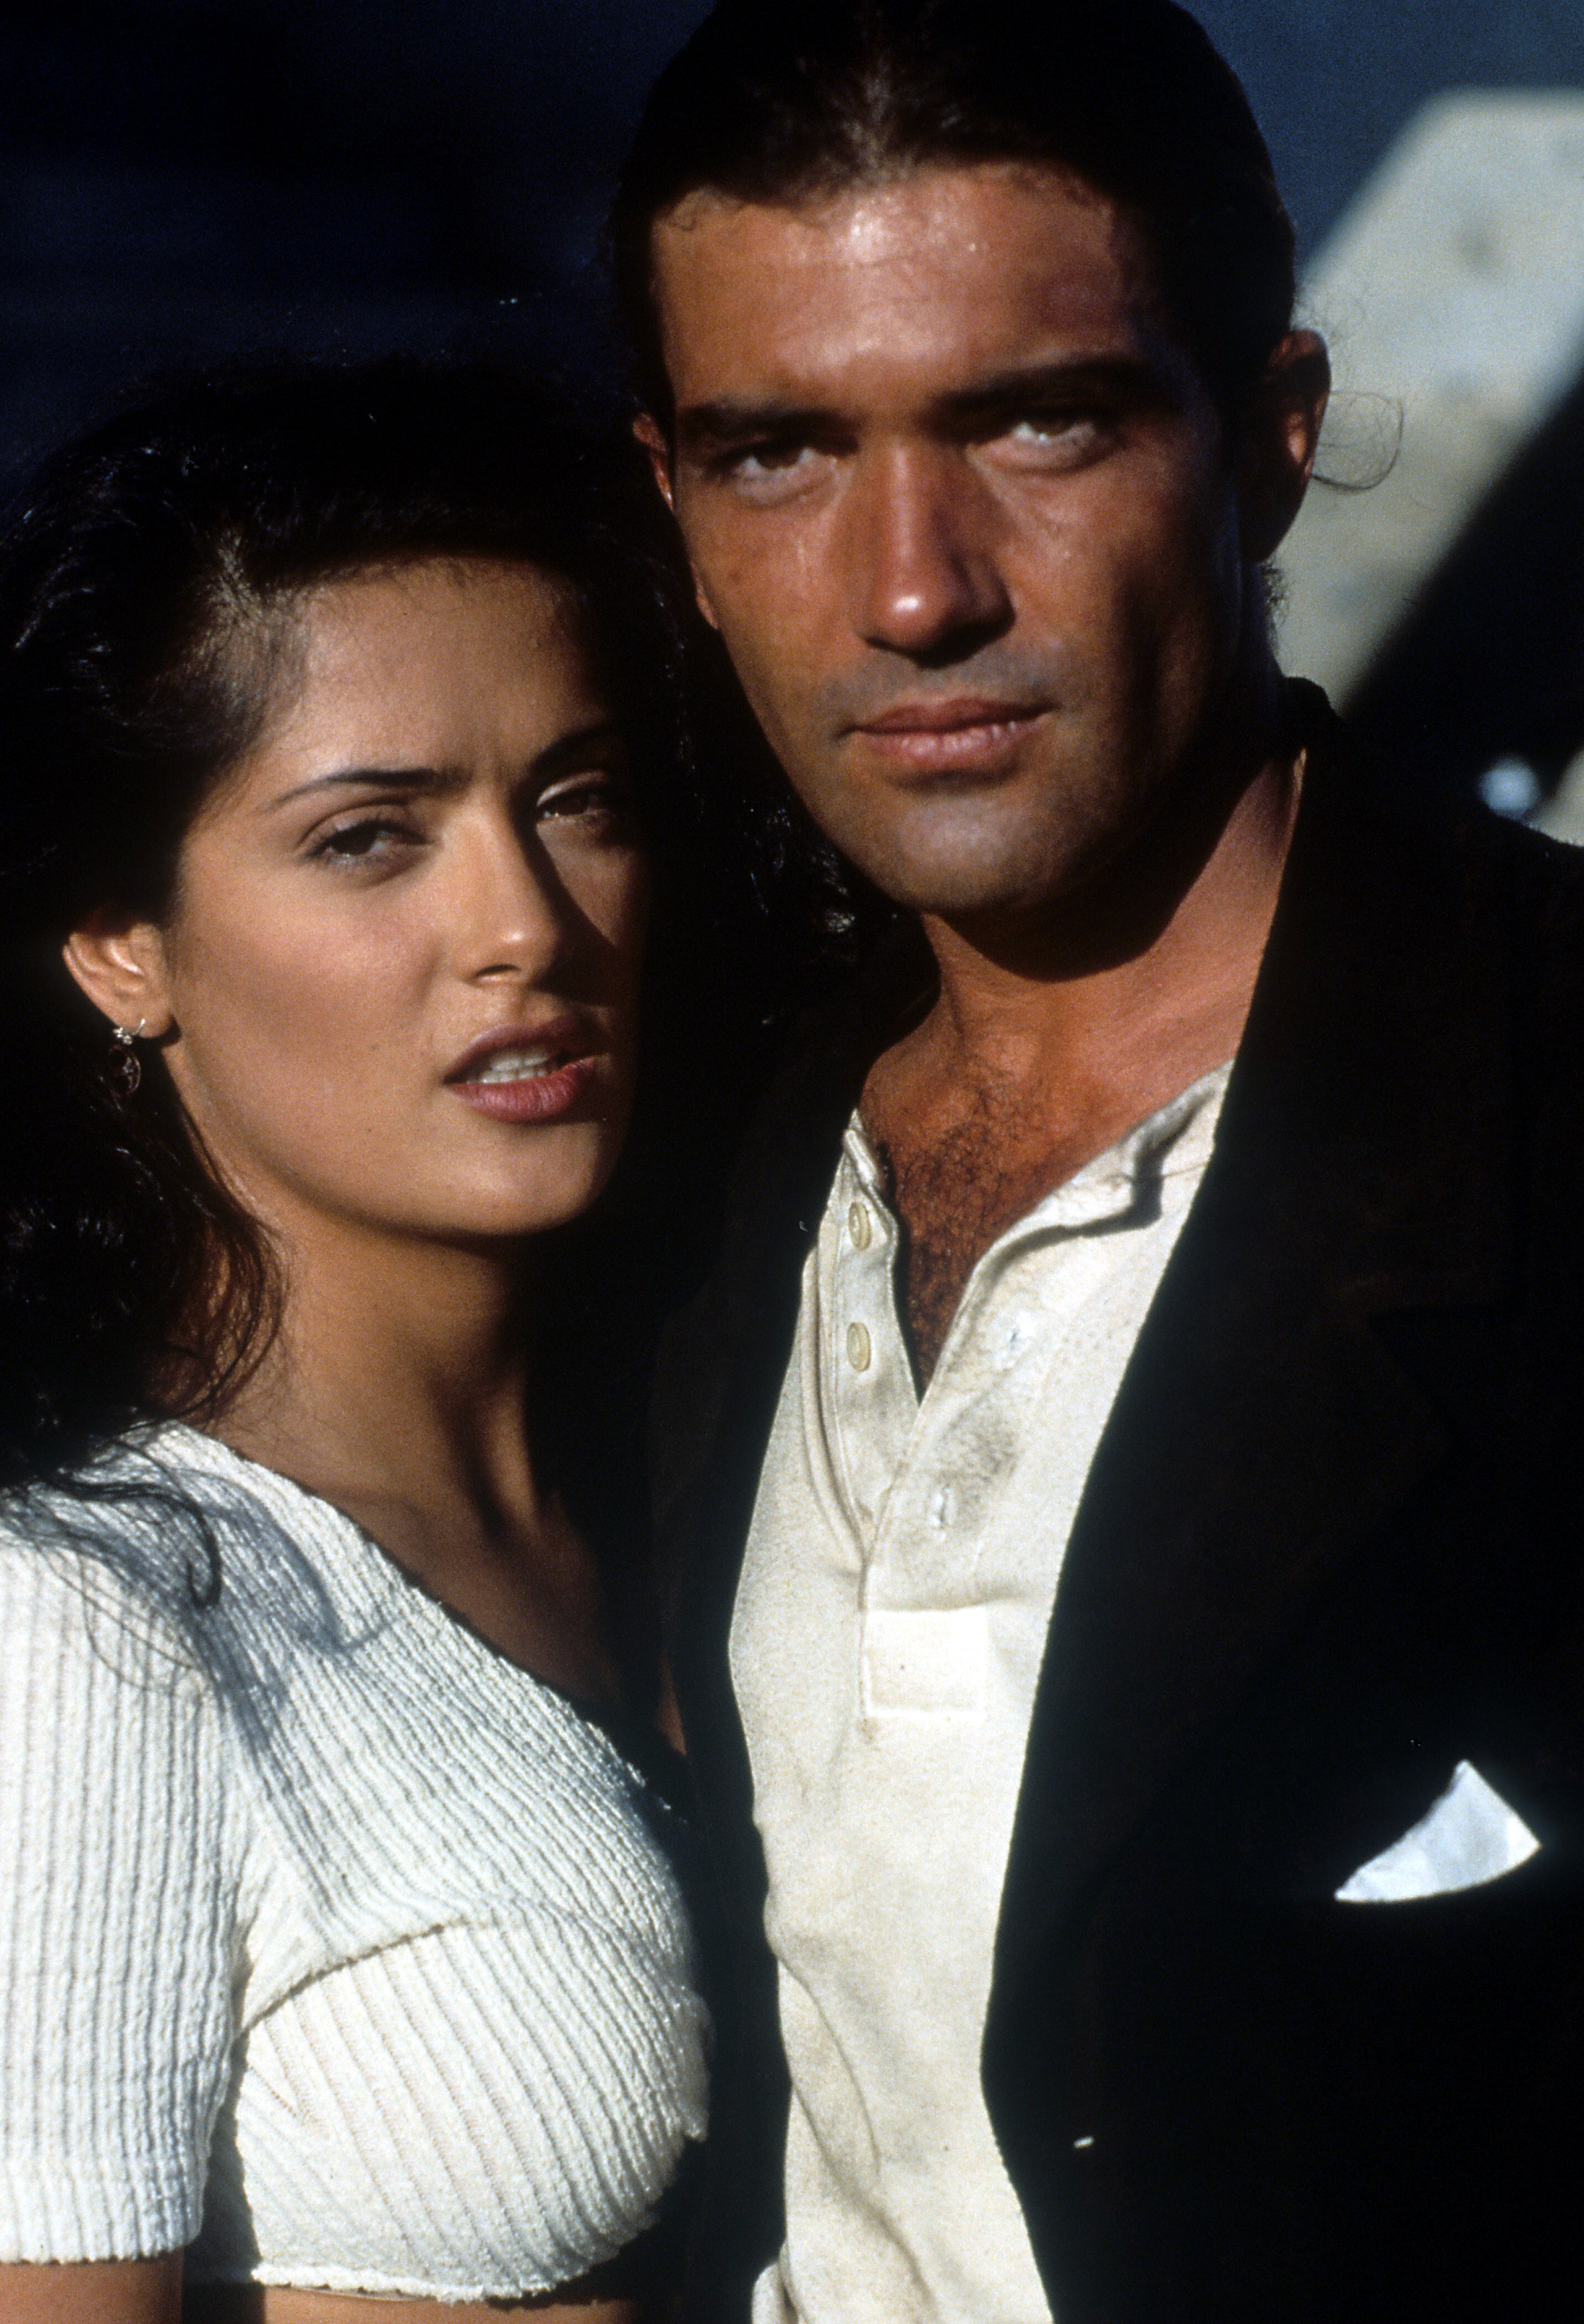 Antonio Banderas and Salma Hayek in a scene from 'Desperado'